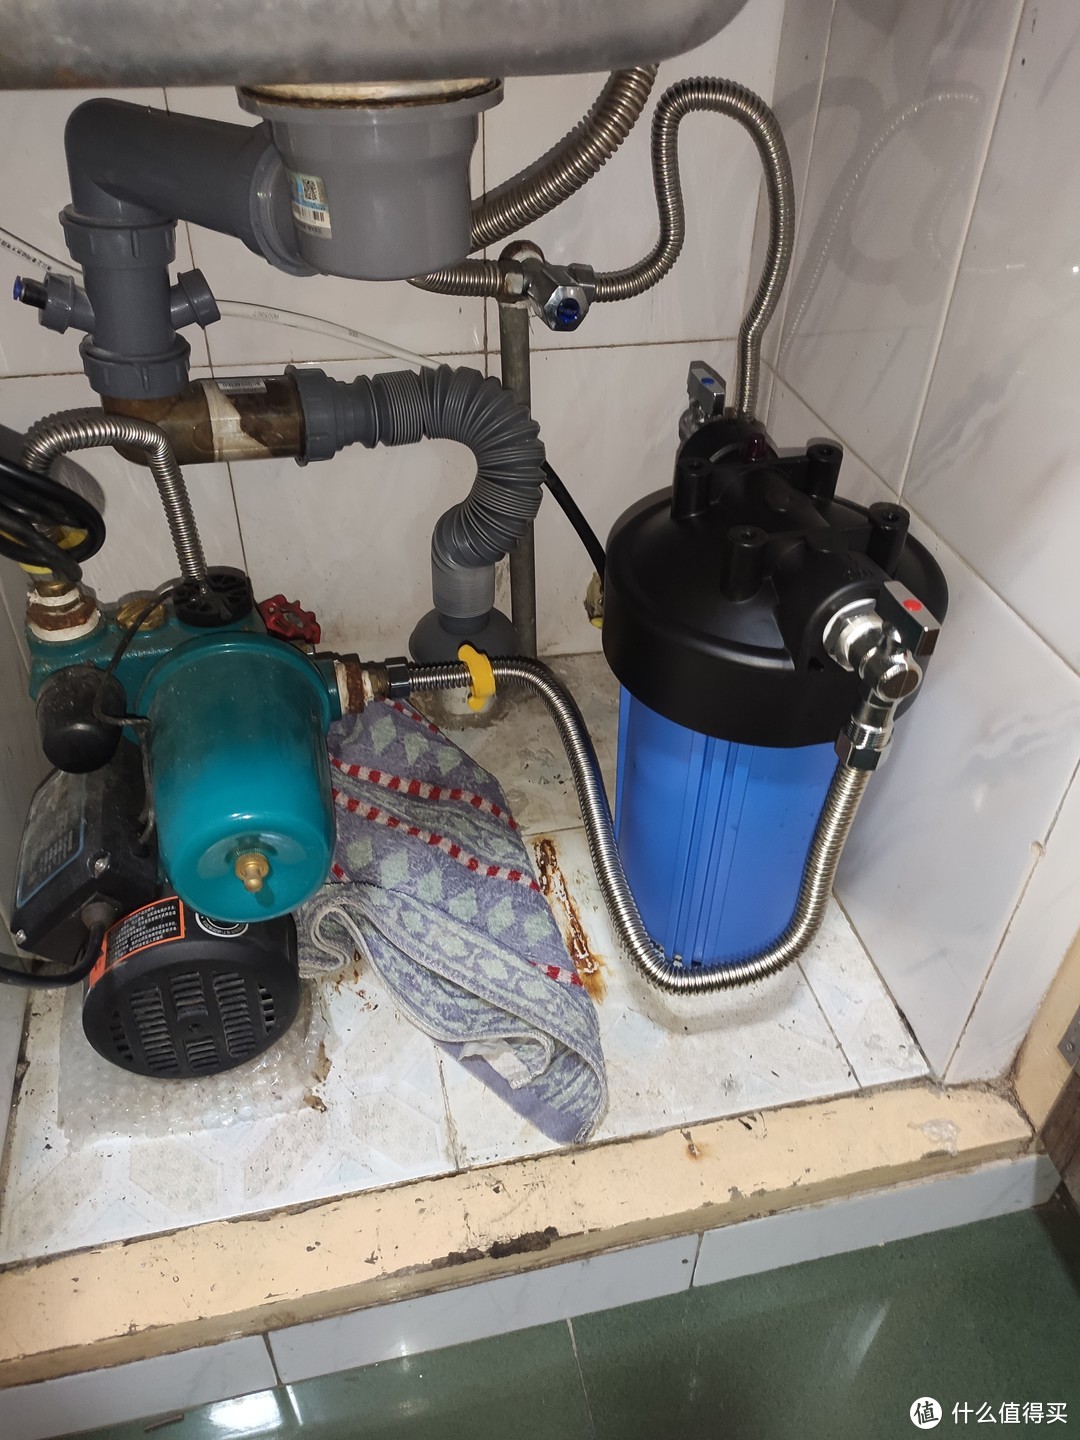 先把进水PP过滤装好到总进水管水泵前级上。